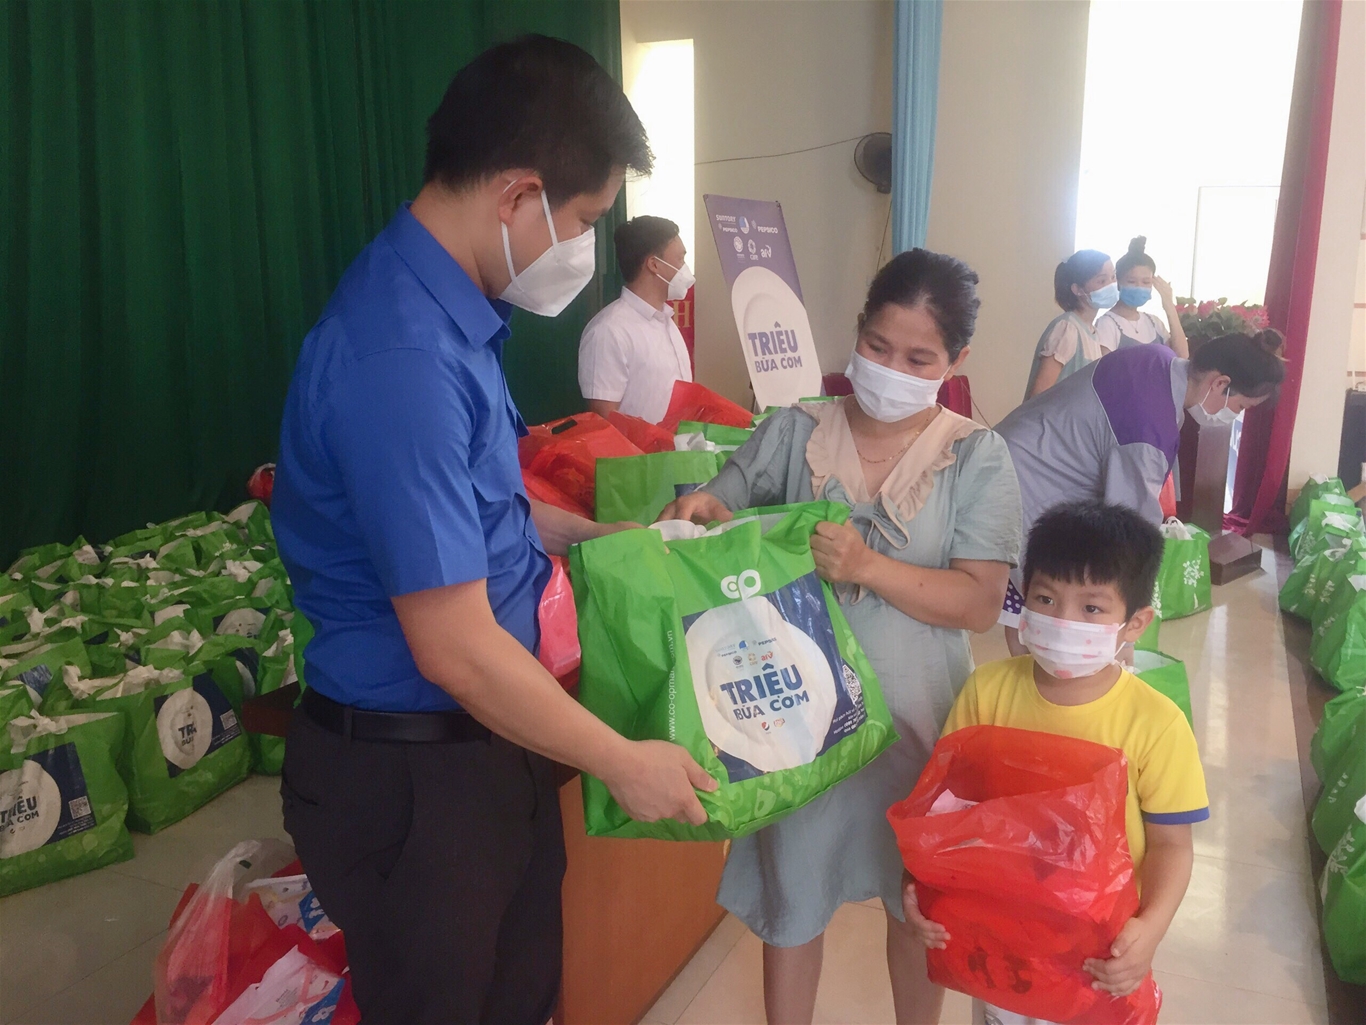 Đồng chí Giáp Xuân Cảnh, Phó bí thư Tỉnh đoàn, chủ tịch Hội đồng Đội tỉnh Bắc Giang trao quà cho thai phụ công nhân và trẻ em tại xã Hồng Thái huyện Việt Yên.  